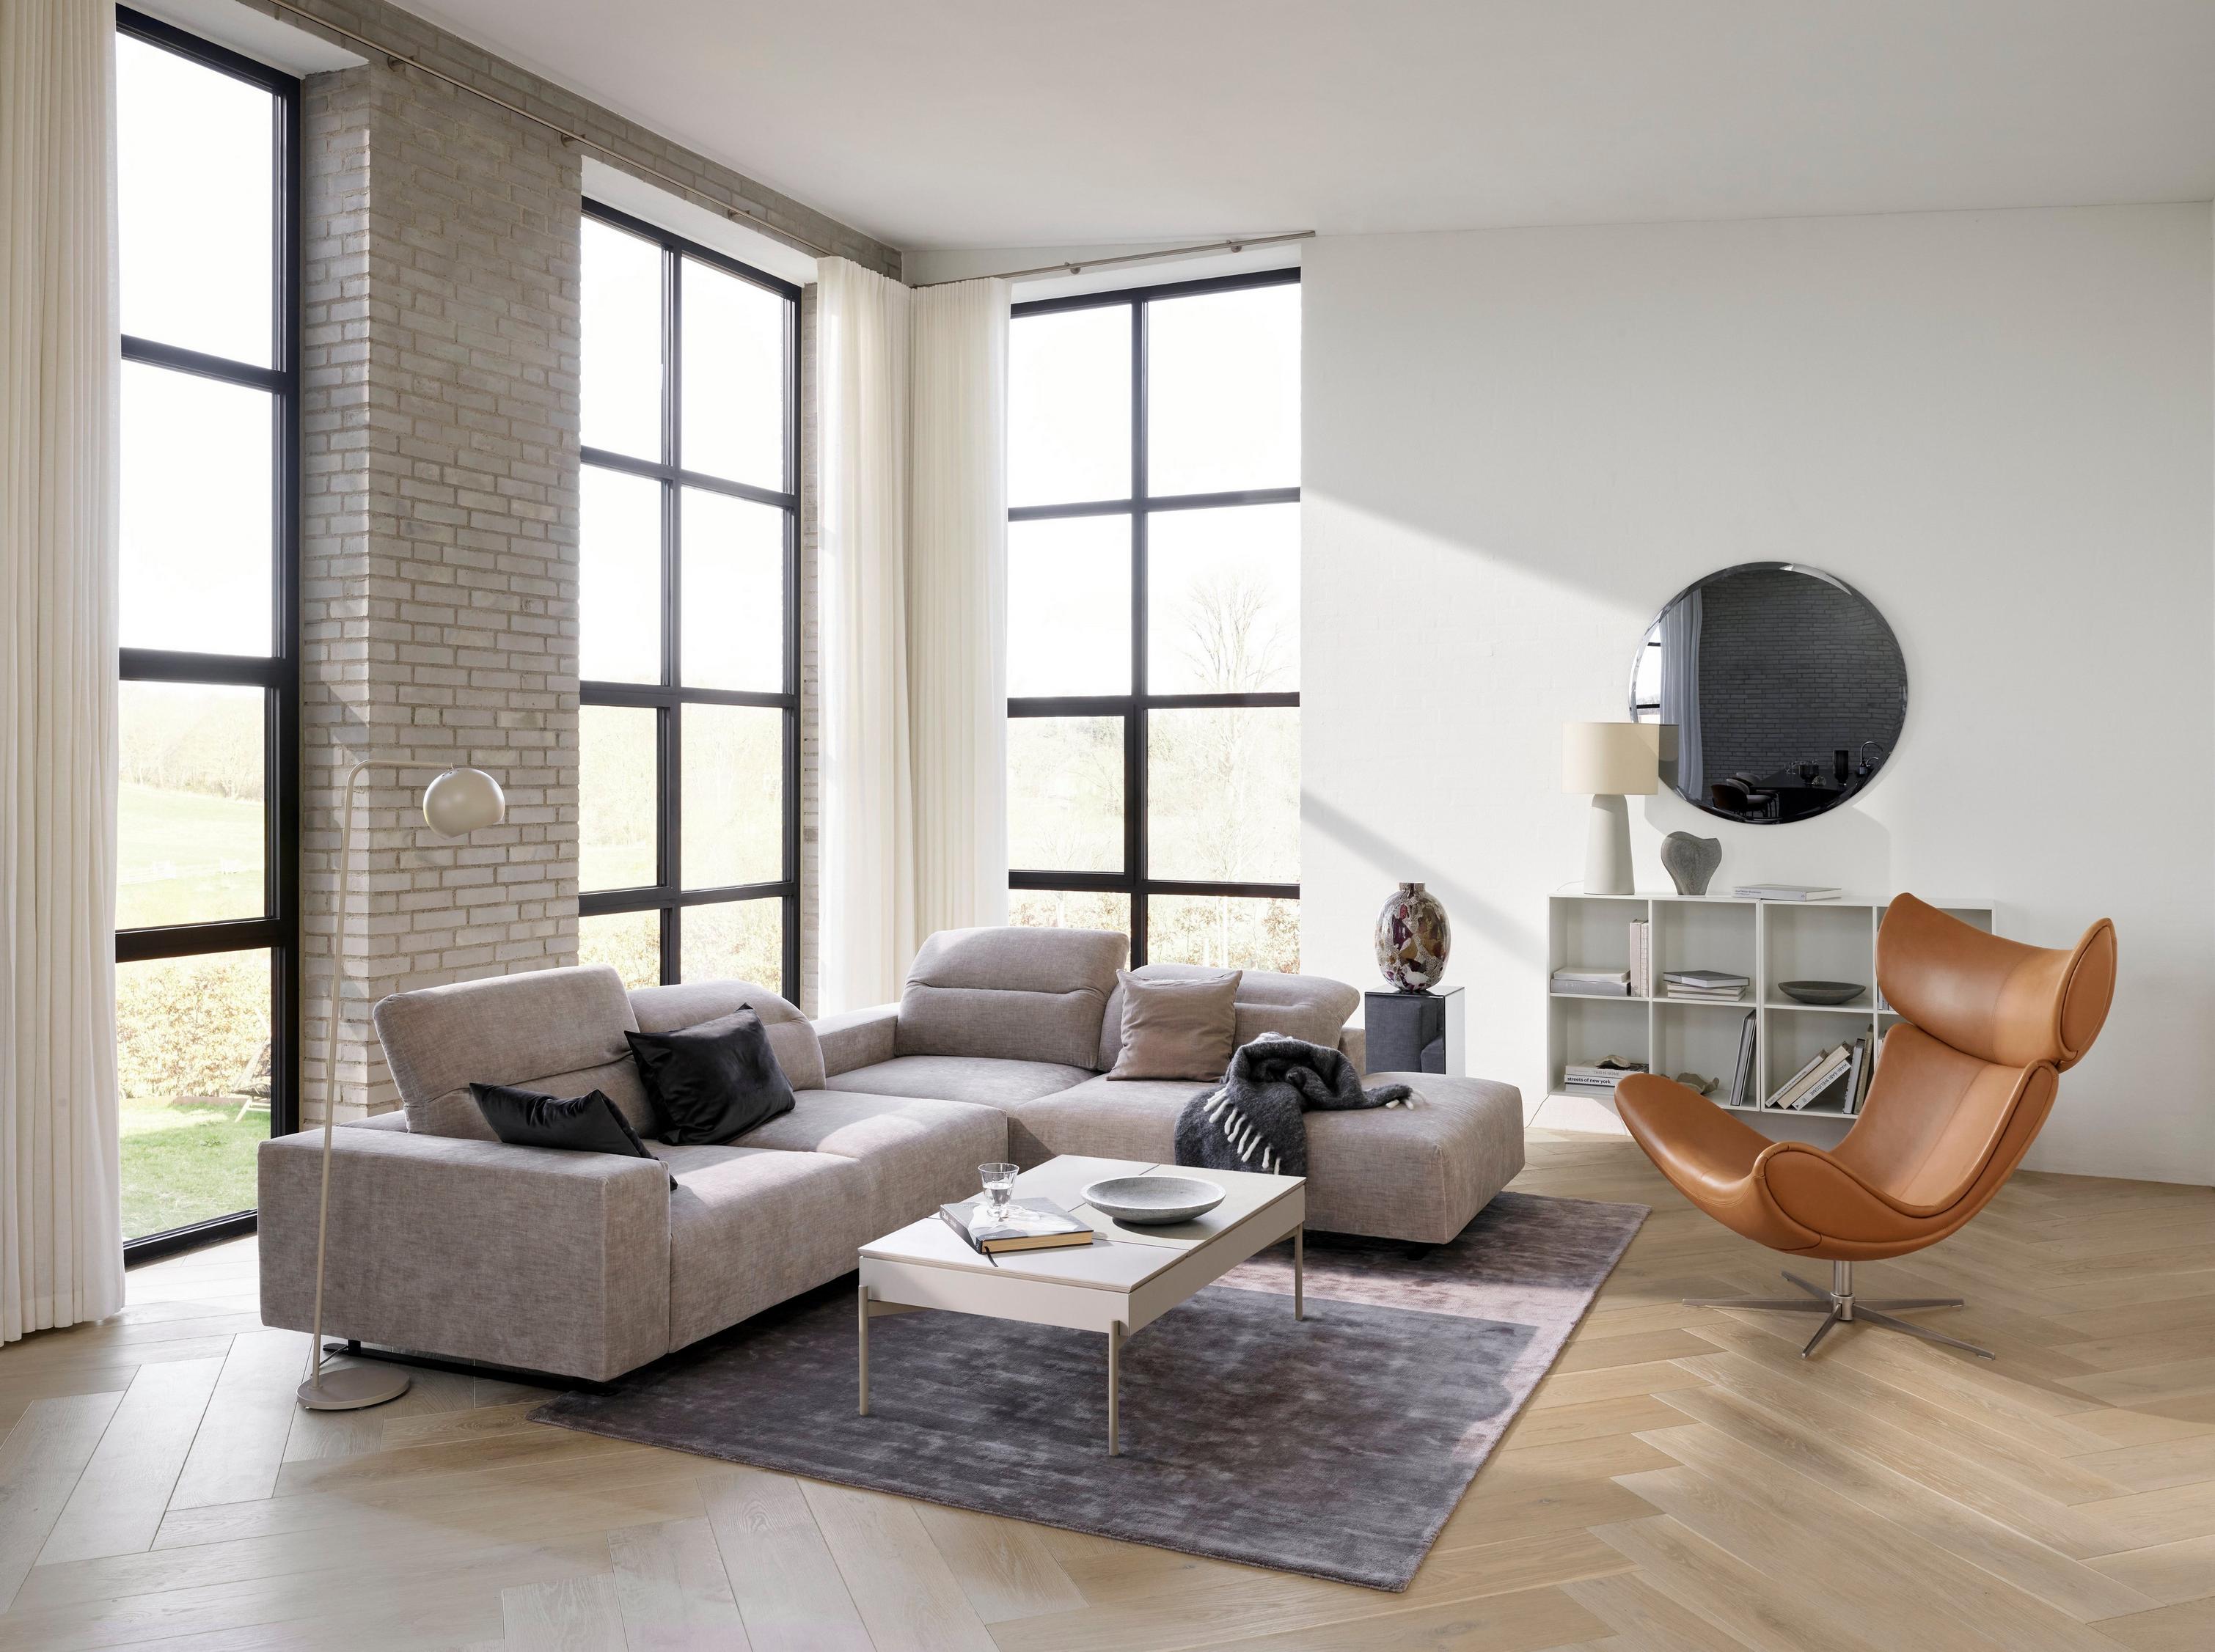 Hampton Sofa und Imola Sessel in einem gemütlichen Wohnzimmer.